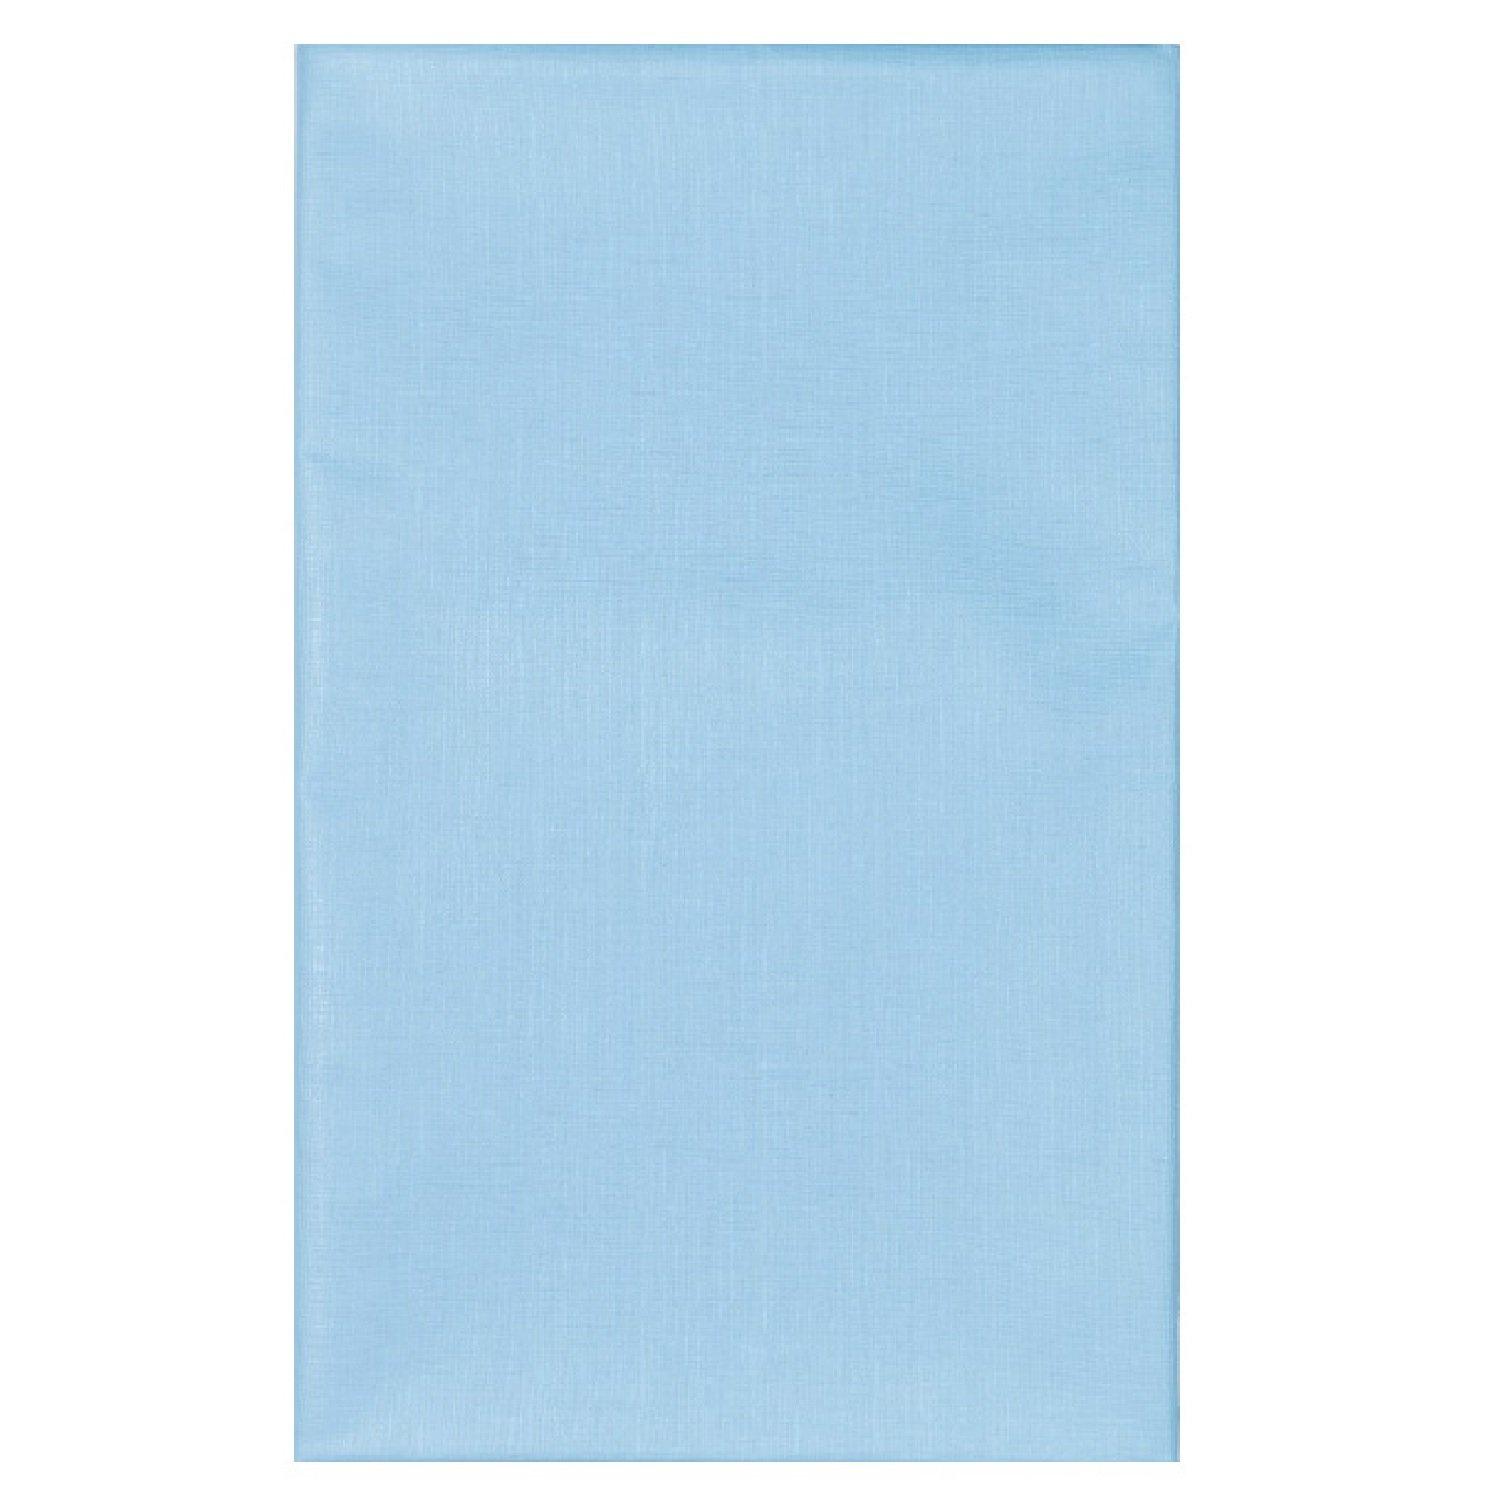 Клеенка с ПВХ покрытием на нетканой основе без окантовки цвет голубой 0,5*0,7 м, Колорит, 150 гр., пакет